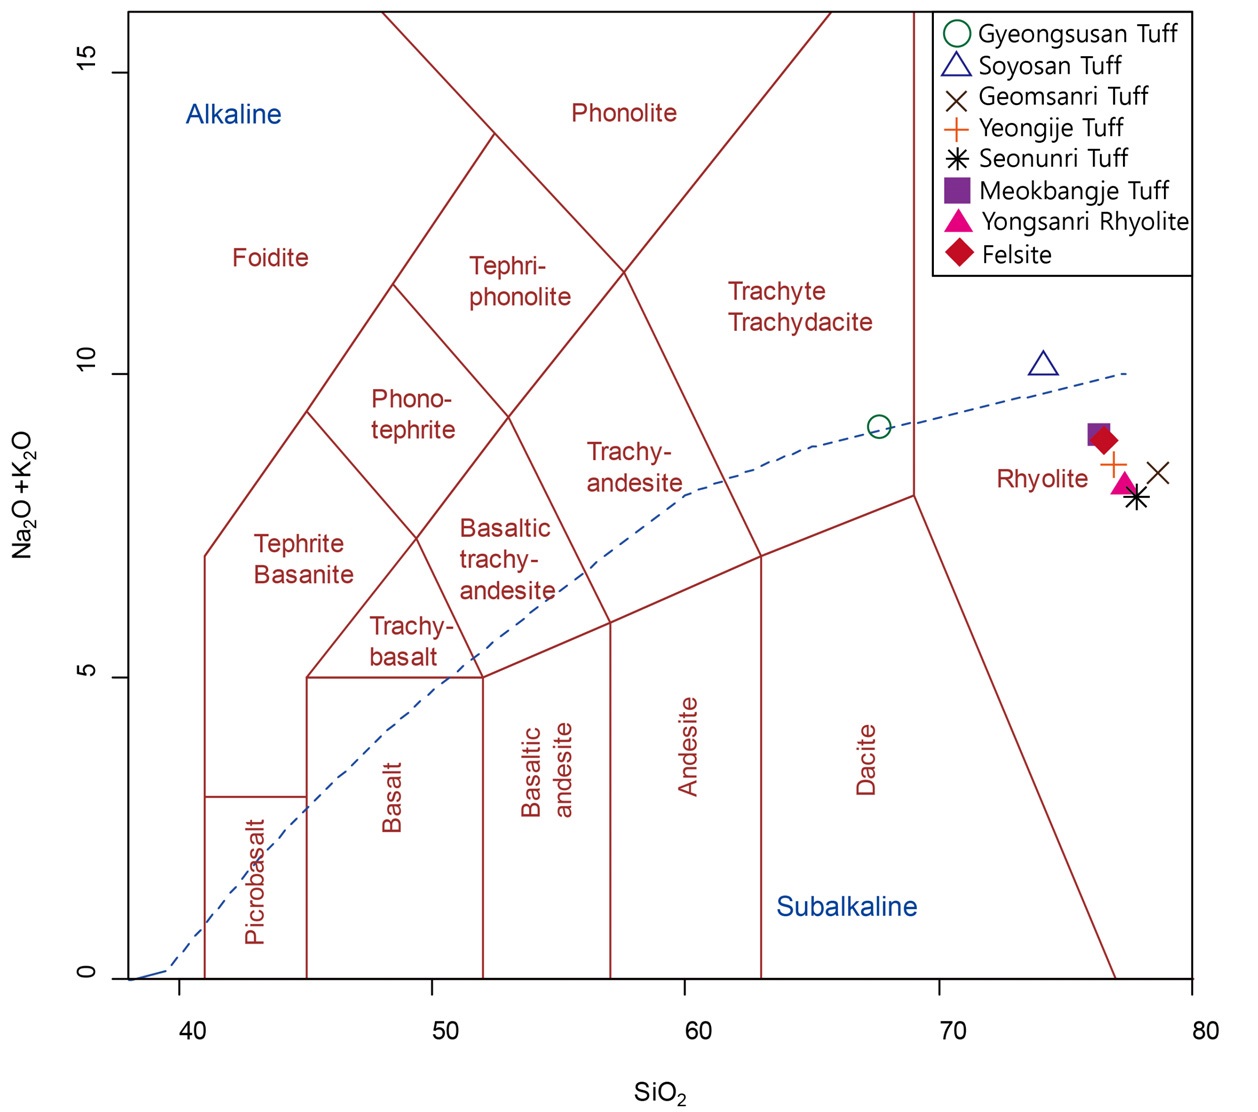 그림 5-4. 선운산화산암 화학적 분류를 위한 TAS (Total Alkali vs. Silica) 도표